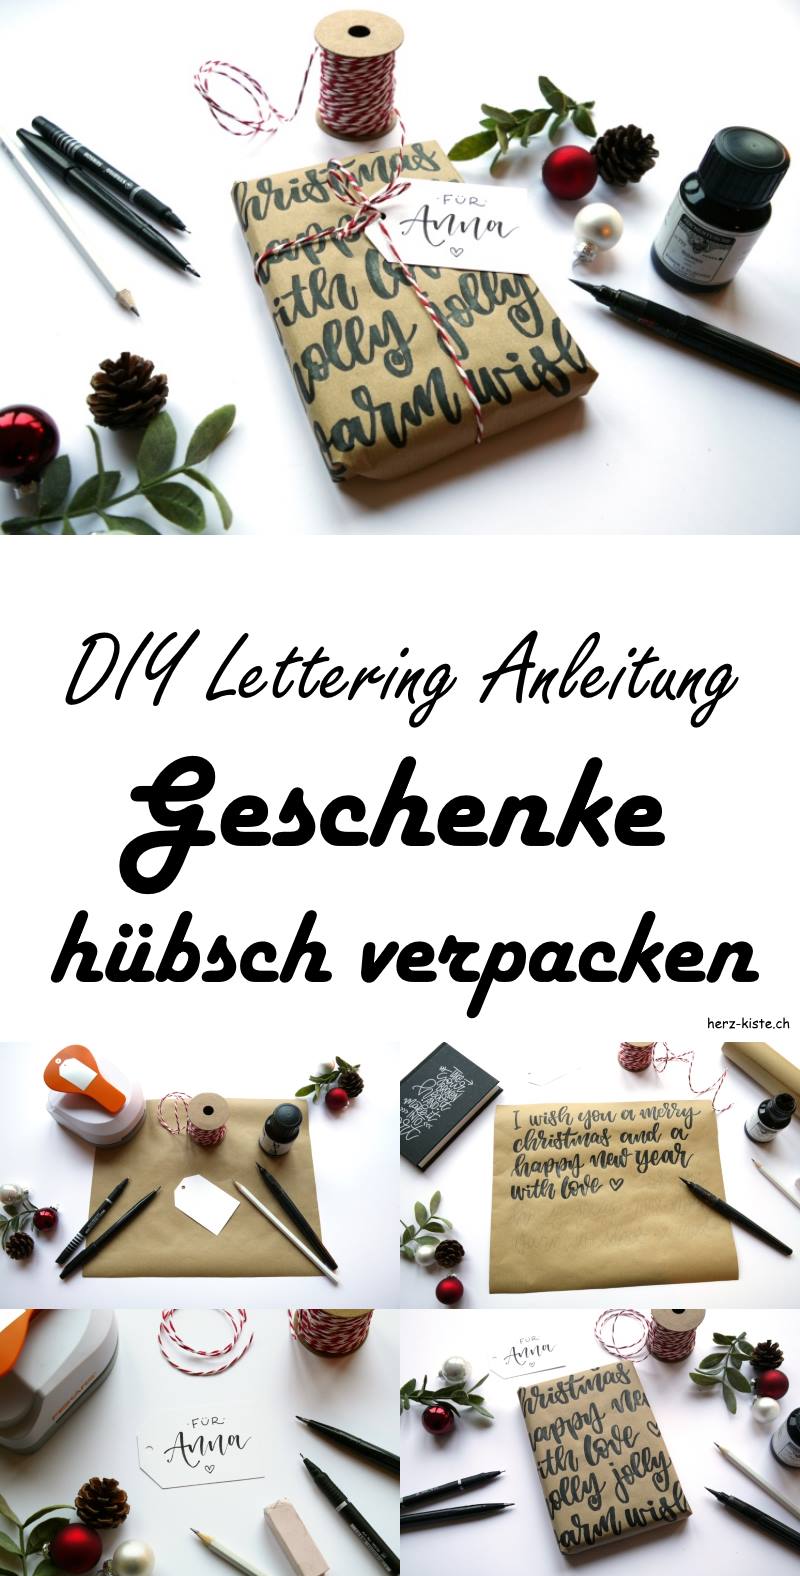 DIY Lettering: Eine Anleitung, wie du deine Geschenke mit Handlettering hübsch verpacken kannst. Lettering Idee für Geschenke.